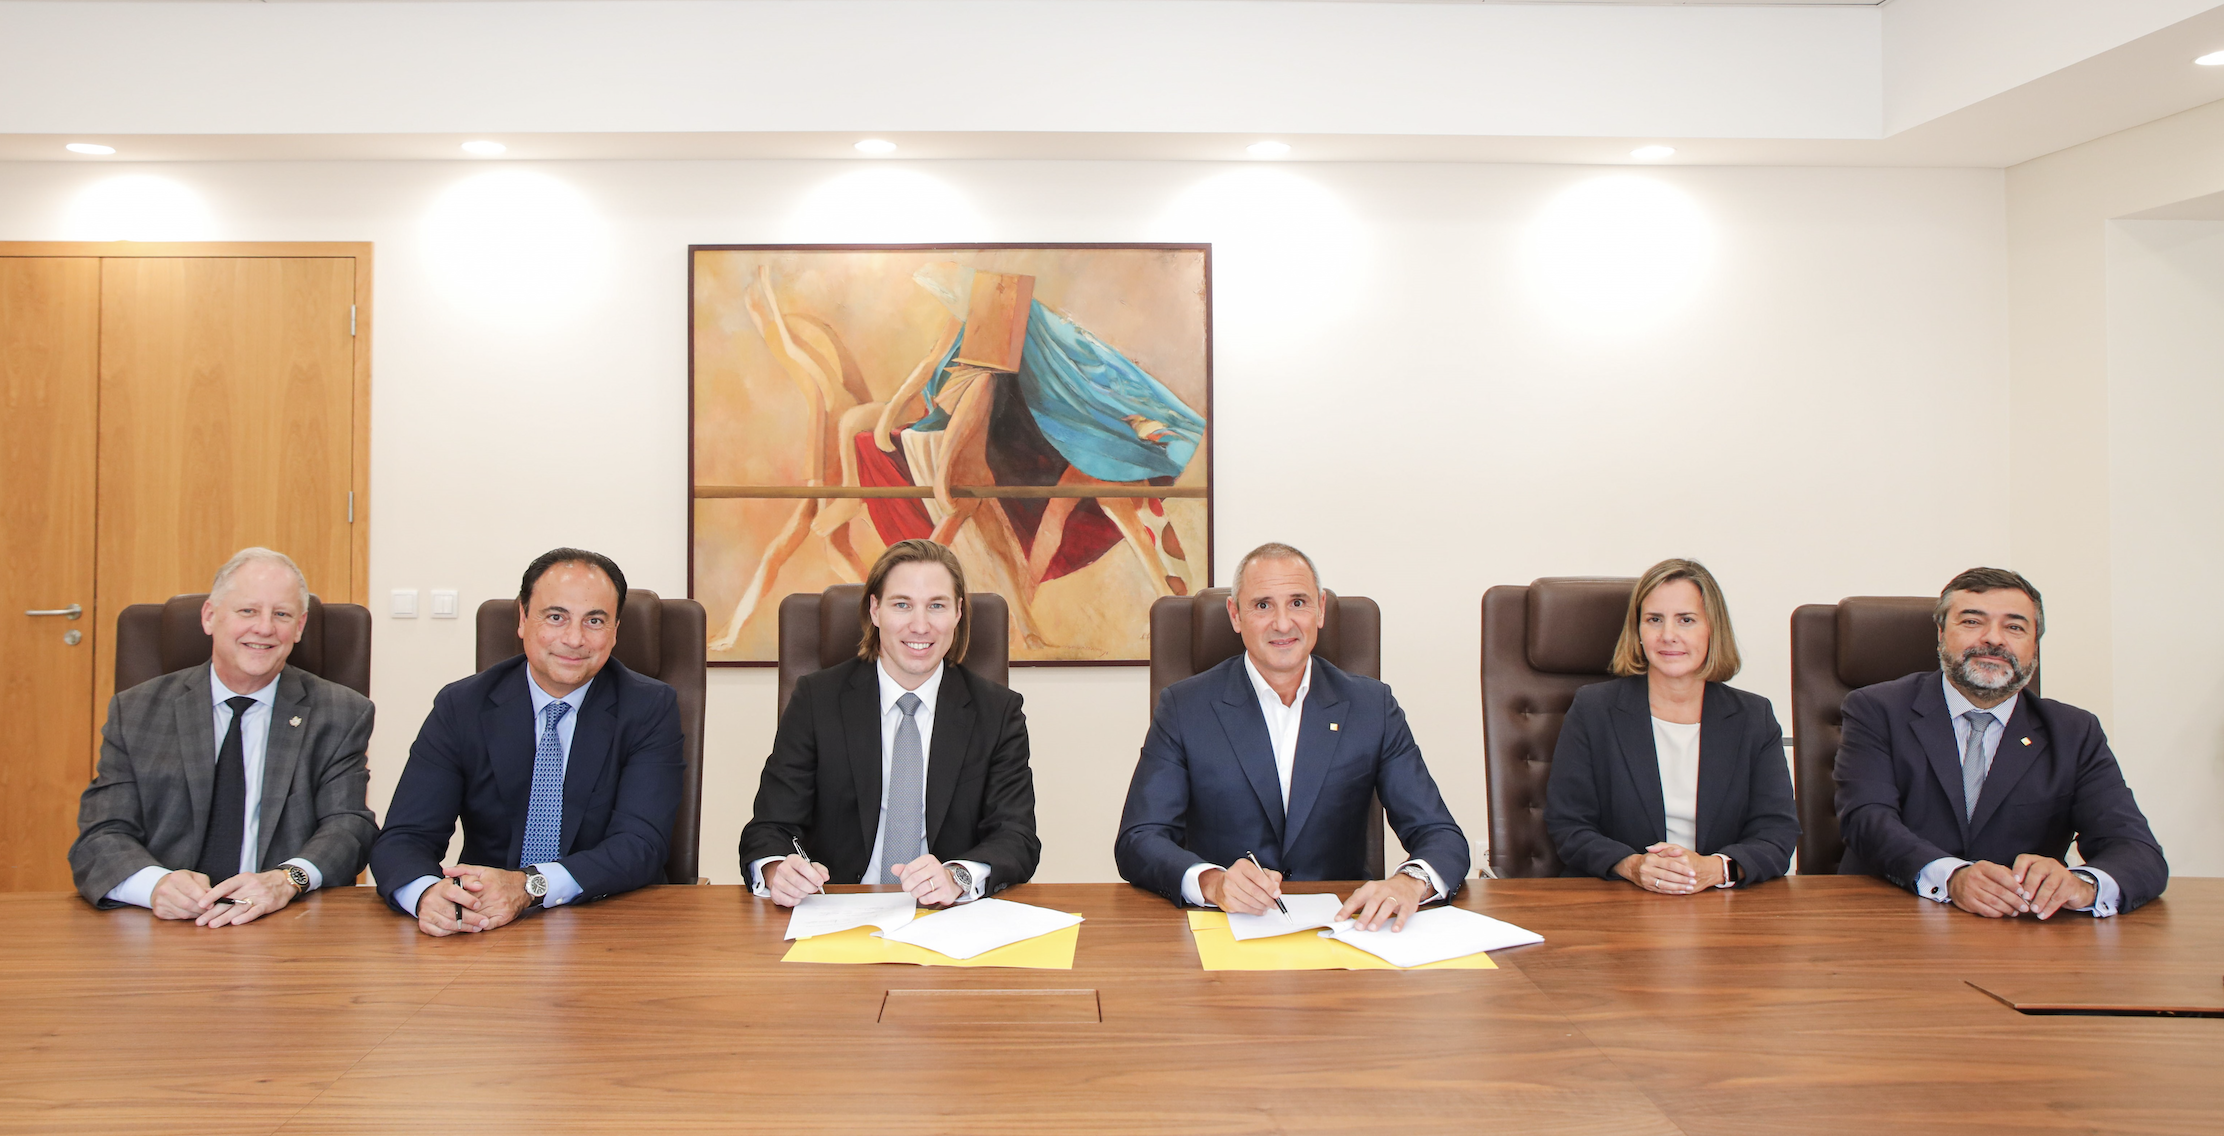 La très jeune Fintech portugaise RAUVA, acquiert Banco Empresas Montepio pour 30 millions d'euros et devient l'une des premières licornes du Portugal.